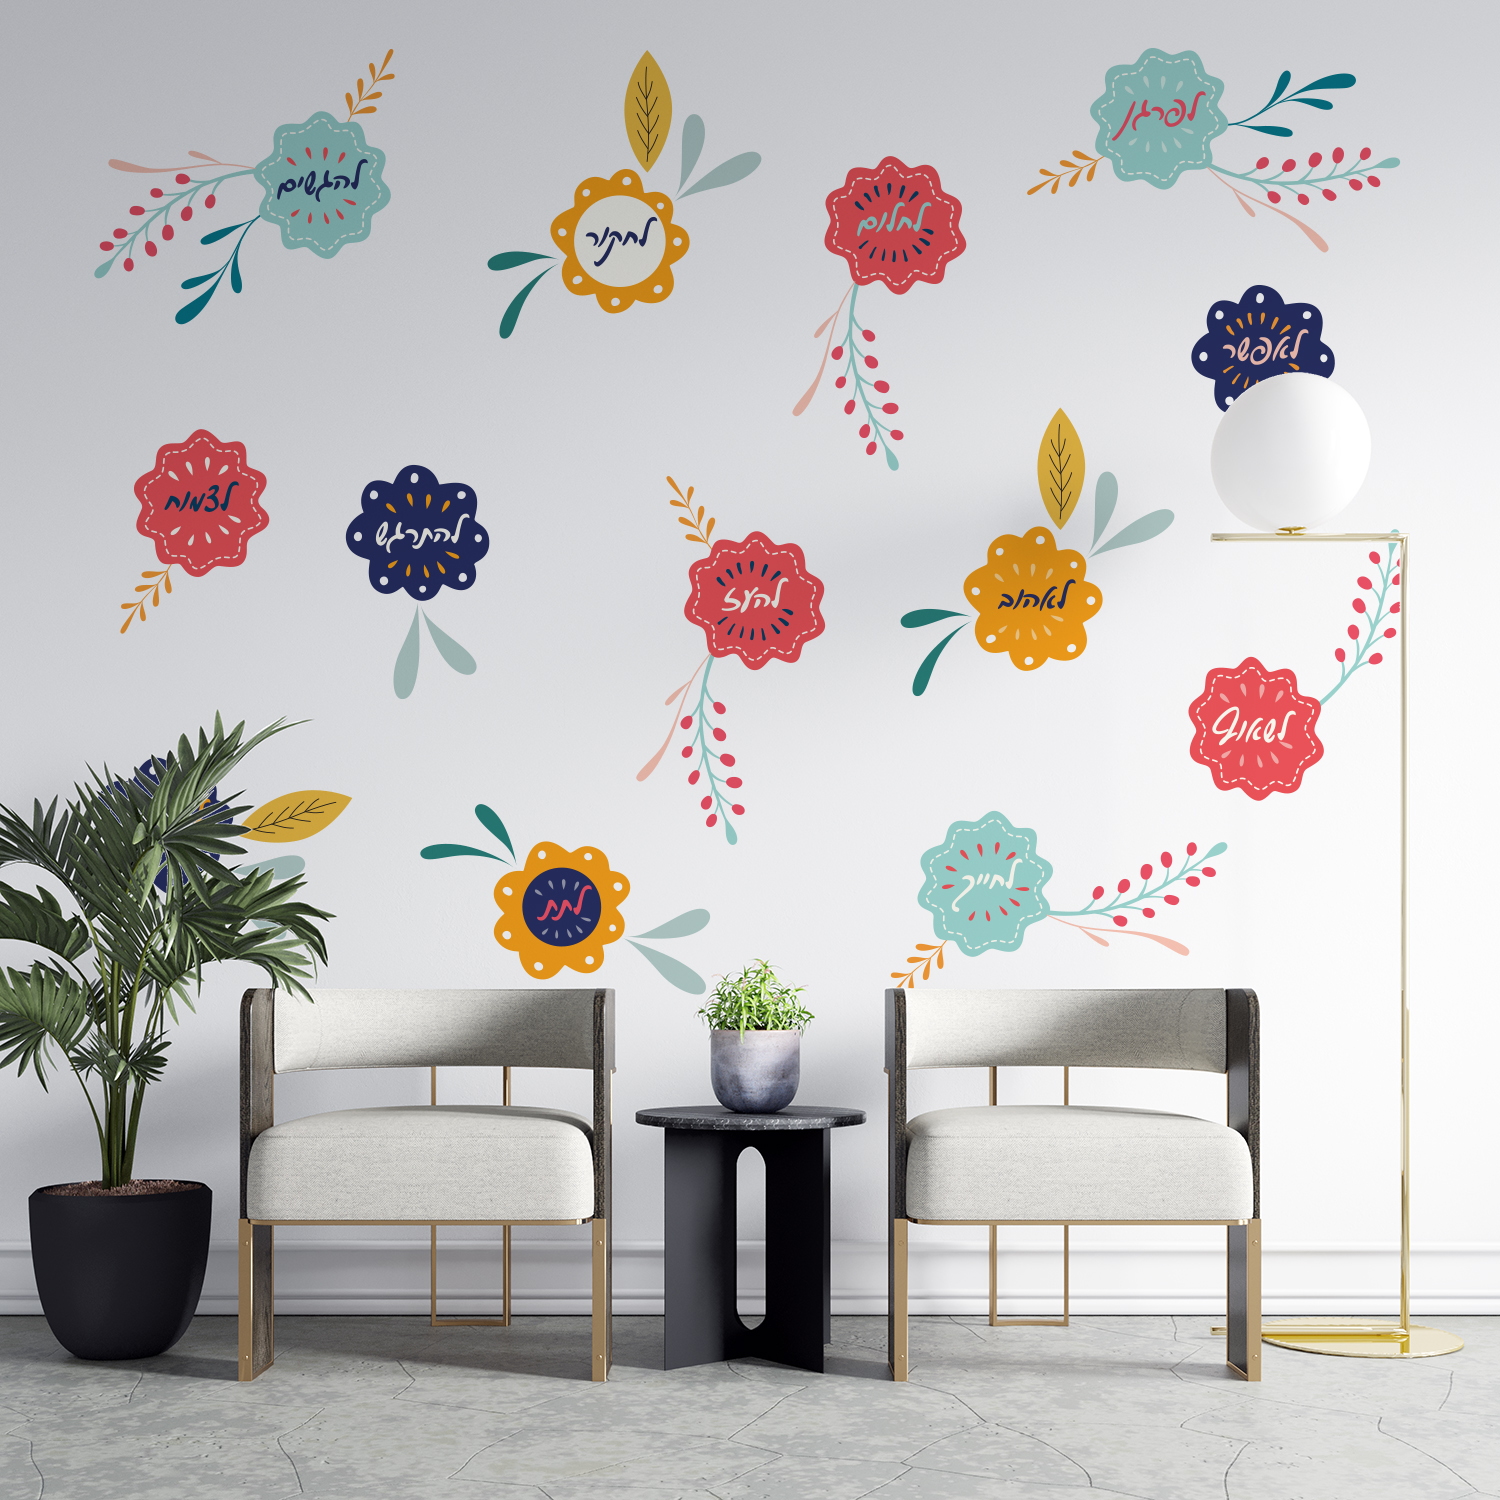 חדר המתנה עם מדבקת קיר של פרחים המכילים מילות העצמה. מדבקת קיר שמתאימה לבתי ספר, מרחבי למידה חדרי המתנה ועוד